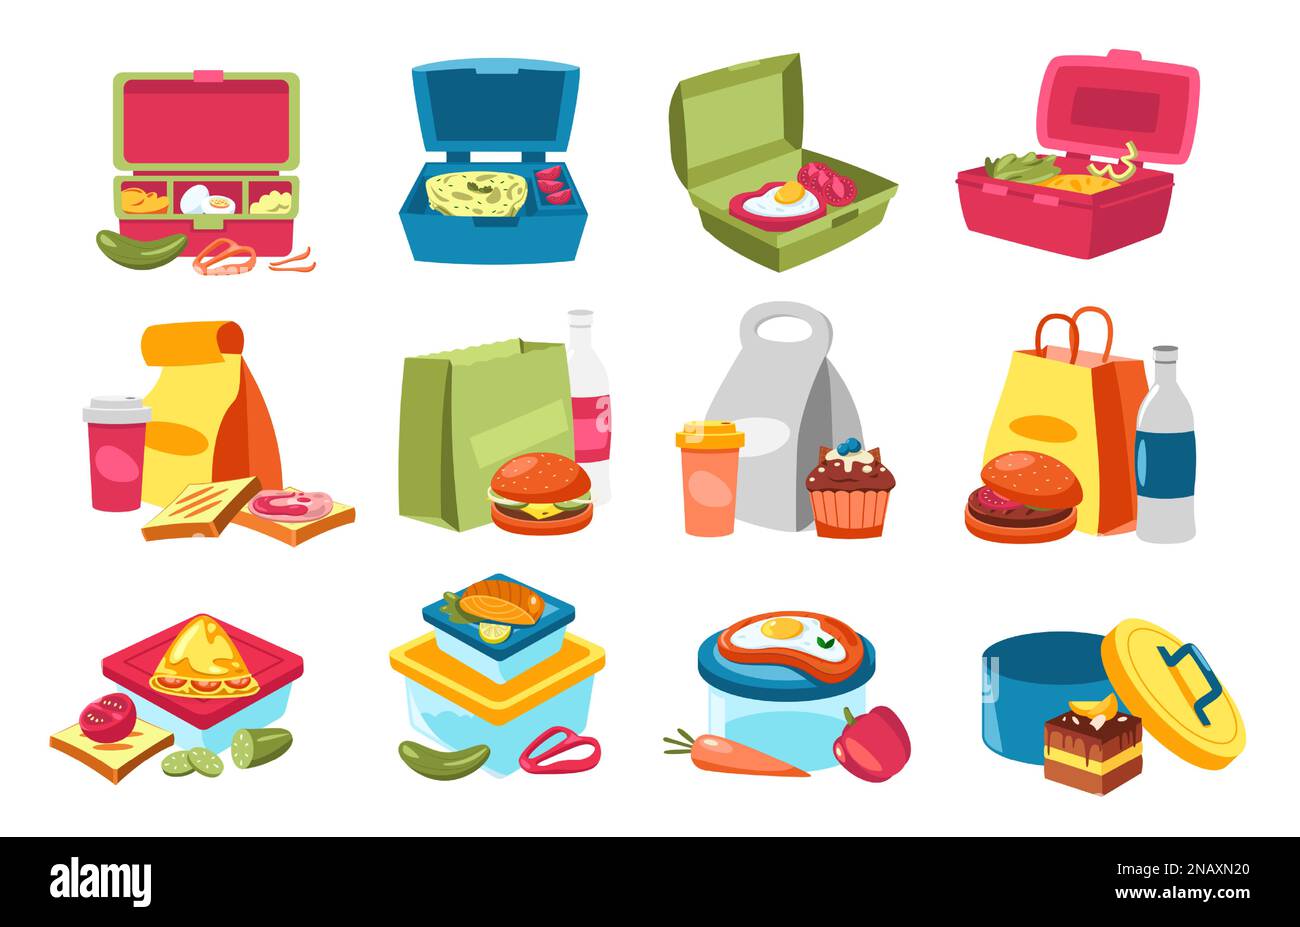 Lunchbox-Essen. Behälter mit hausgemachtem Snack, Gemüse und Obst im Cartoon-Stil, farbenfrohe gesunde Mahlzeit Null Abfall Konzept. Flache Vektorsammlung Stock Vektor